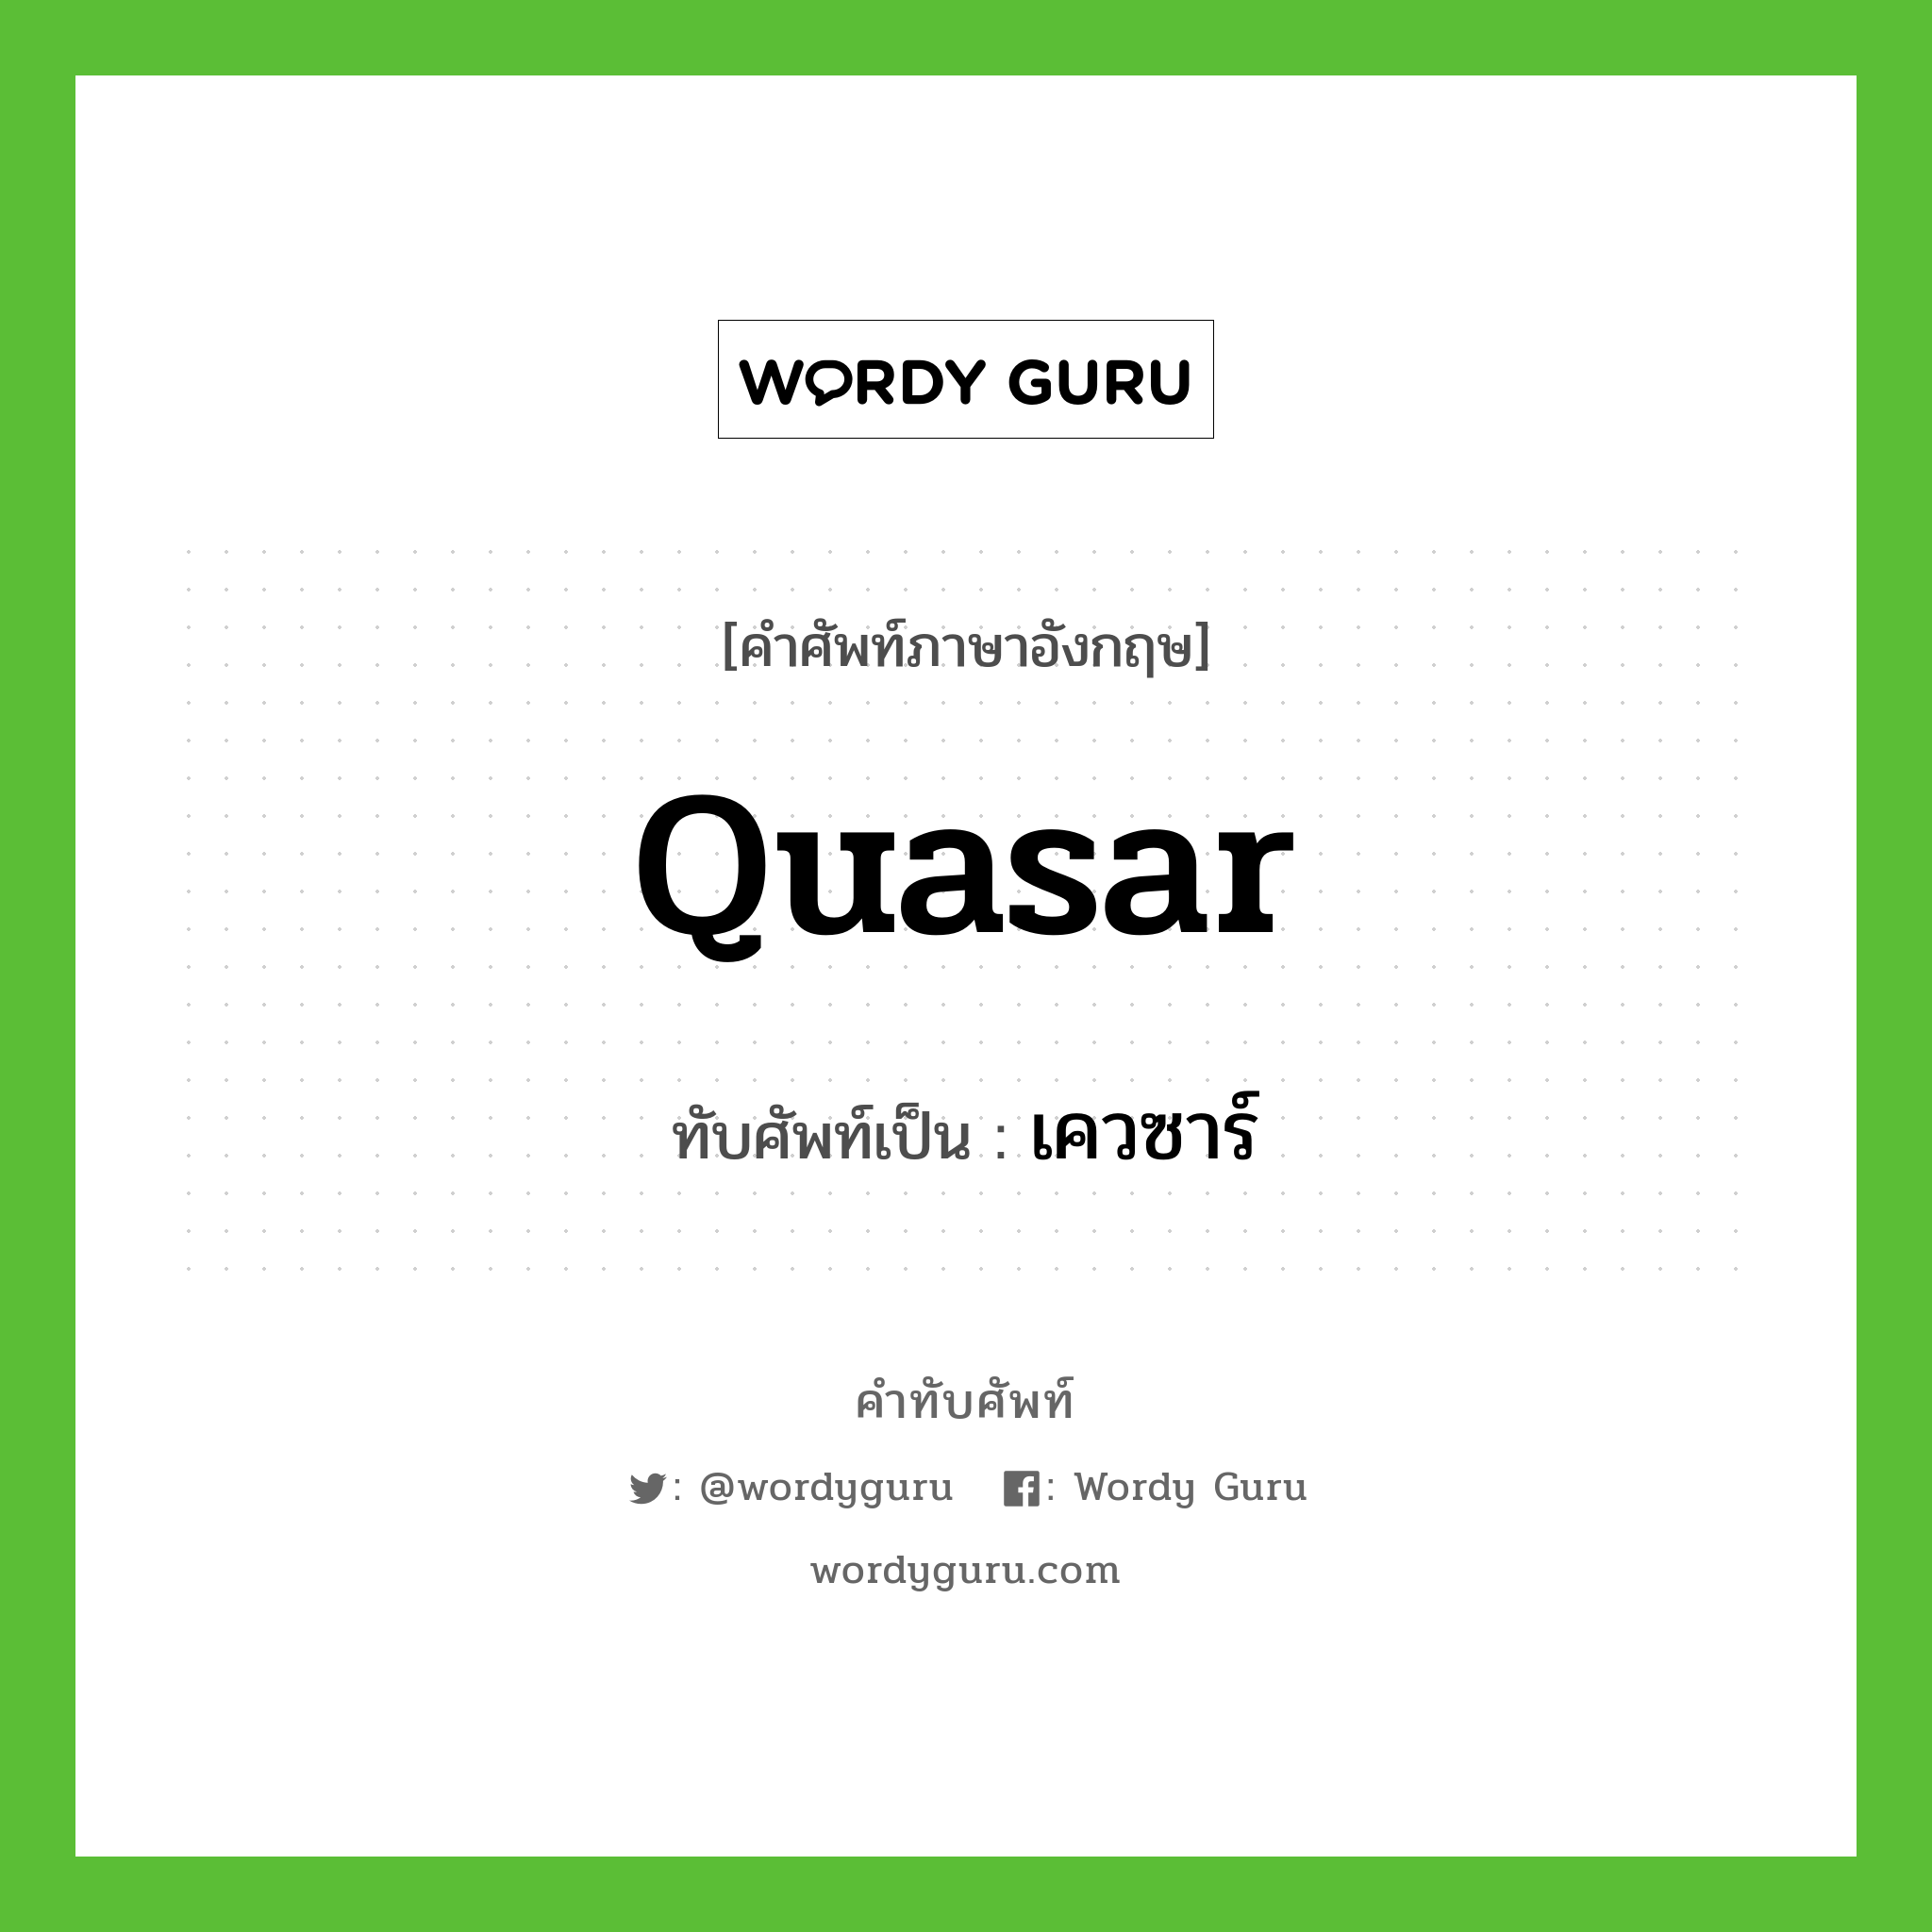 quasar เขียนเป็นคำไทยว่าอะไร?, คำศัพท์ภาษาอังกฤษ quasar ทับศัพท์เป็น เควซาร์